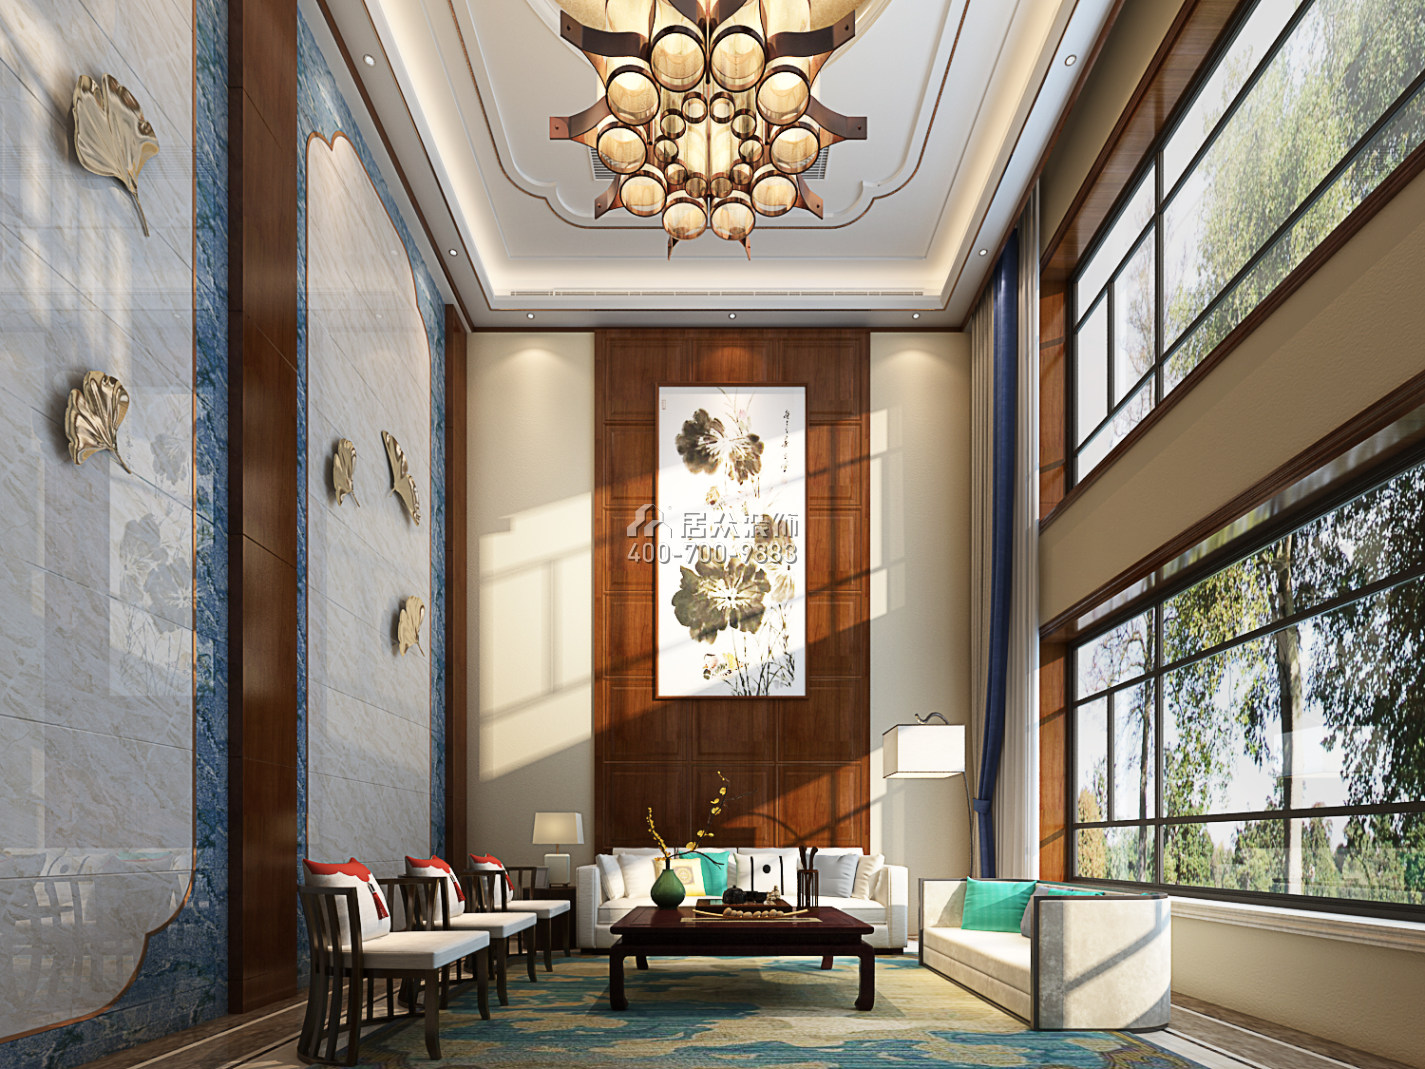 寶峰欣城1000平方米中式風格別墅戶型客廳裝修效果圖